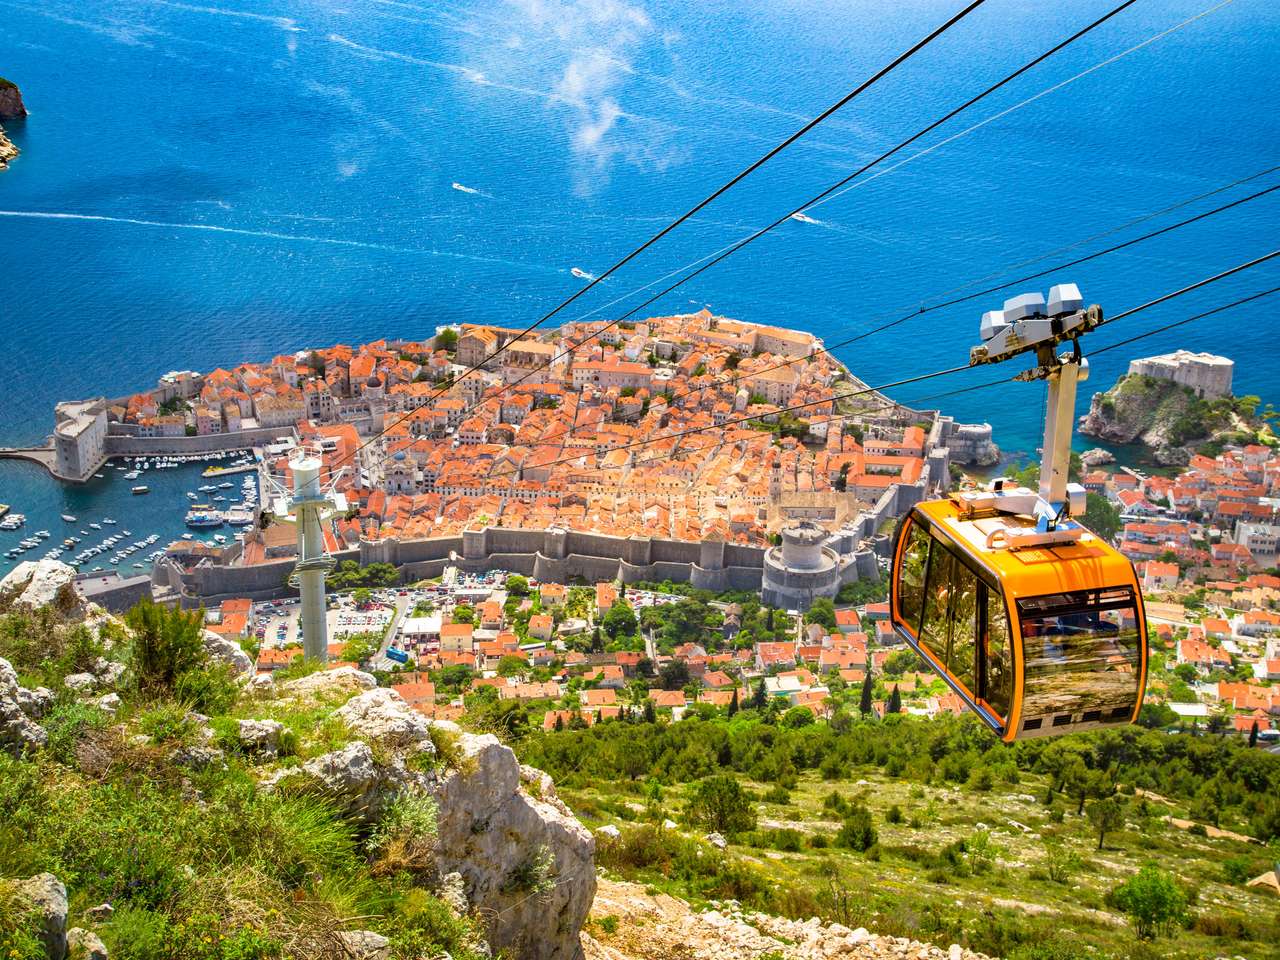 Въздушна панорамна гледка към стария град на Дубровник с известен кабинков картон на SRD планина на слънчев ден със синьо небе и облаци през лятото, Далмация, Хърватия онлайн пъзел